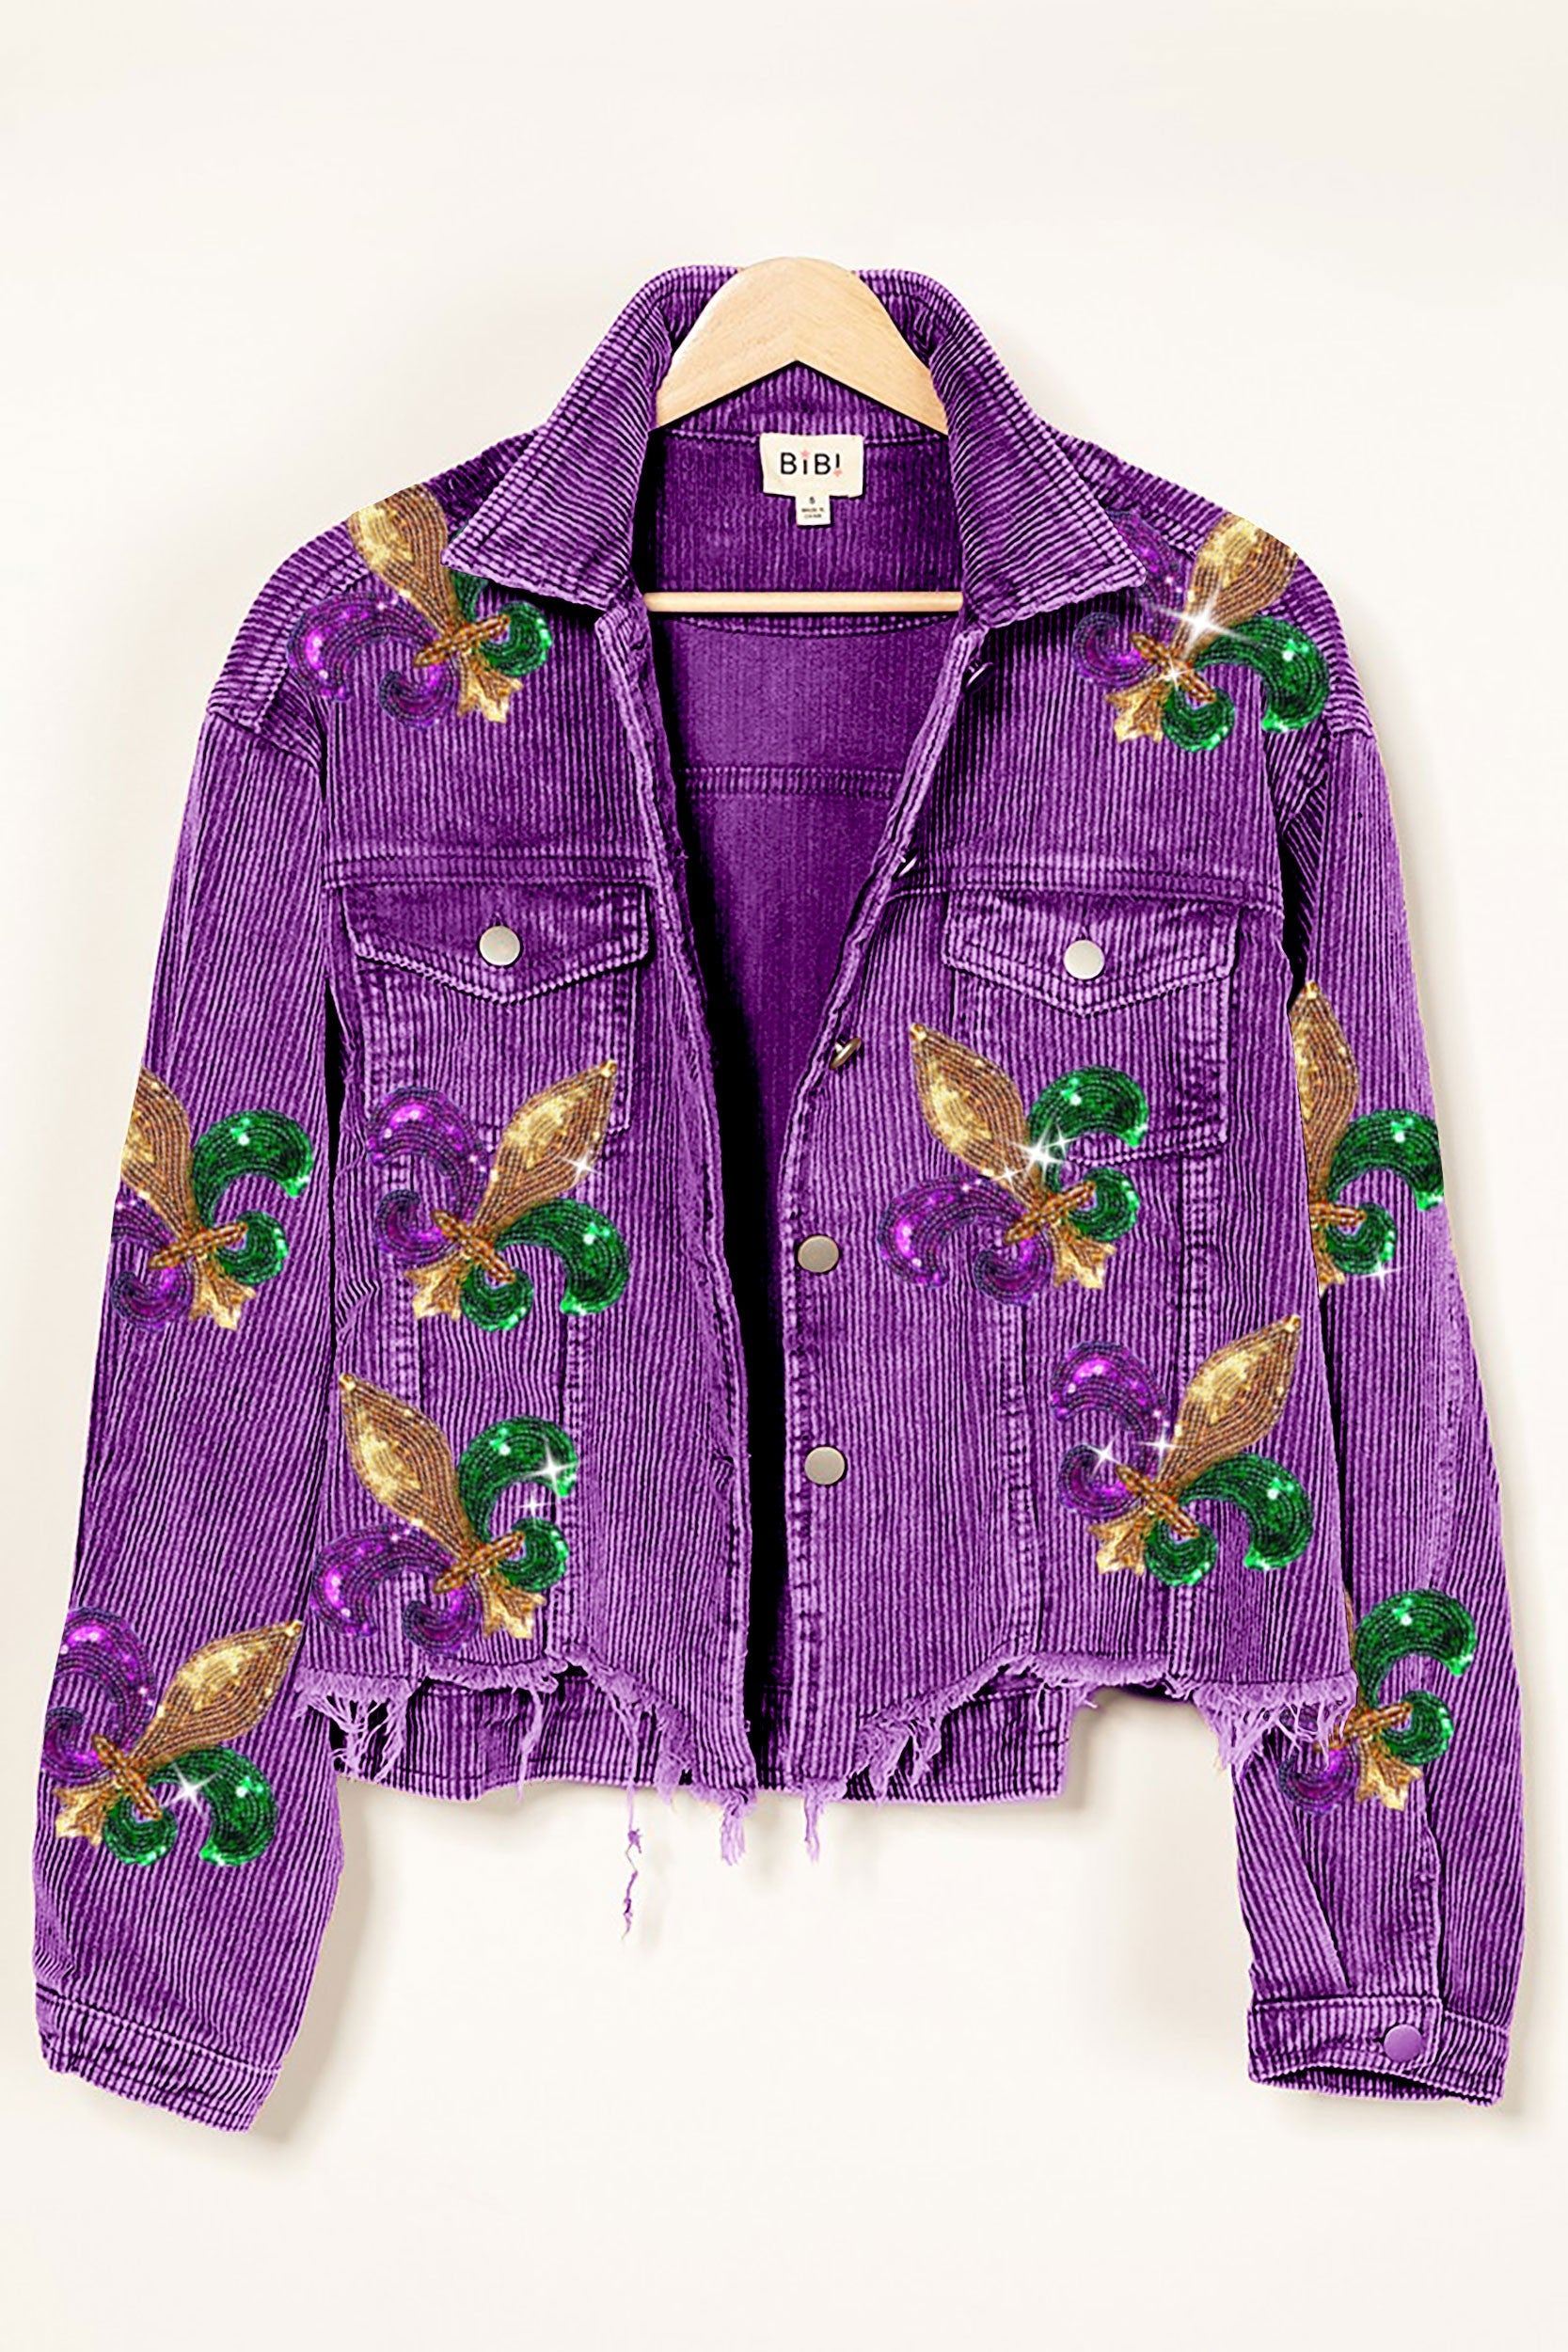 Mardi Gras Fleur De Lis Sequin Applique/Patch - Purple Multi - Trims By The  Yard